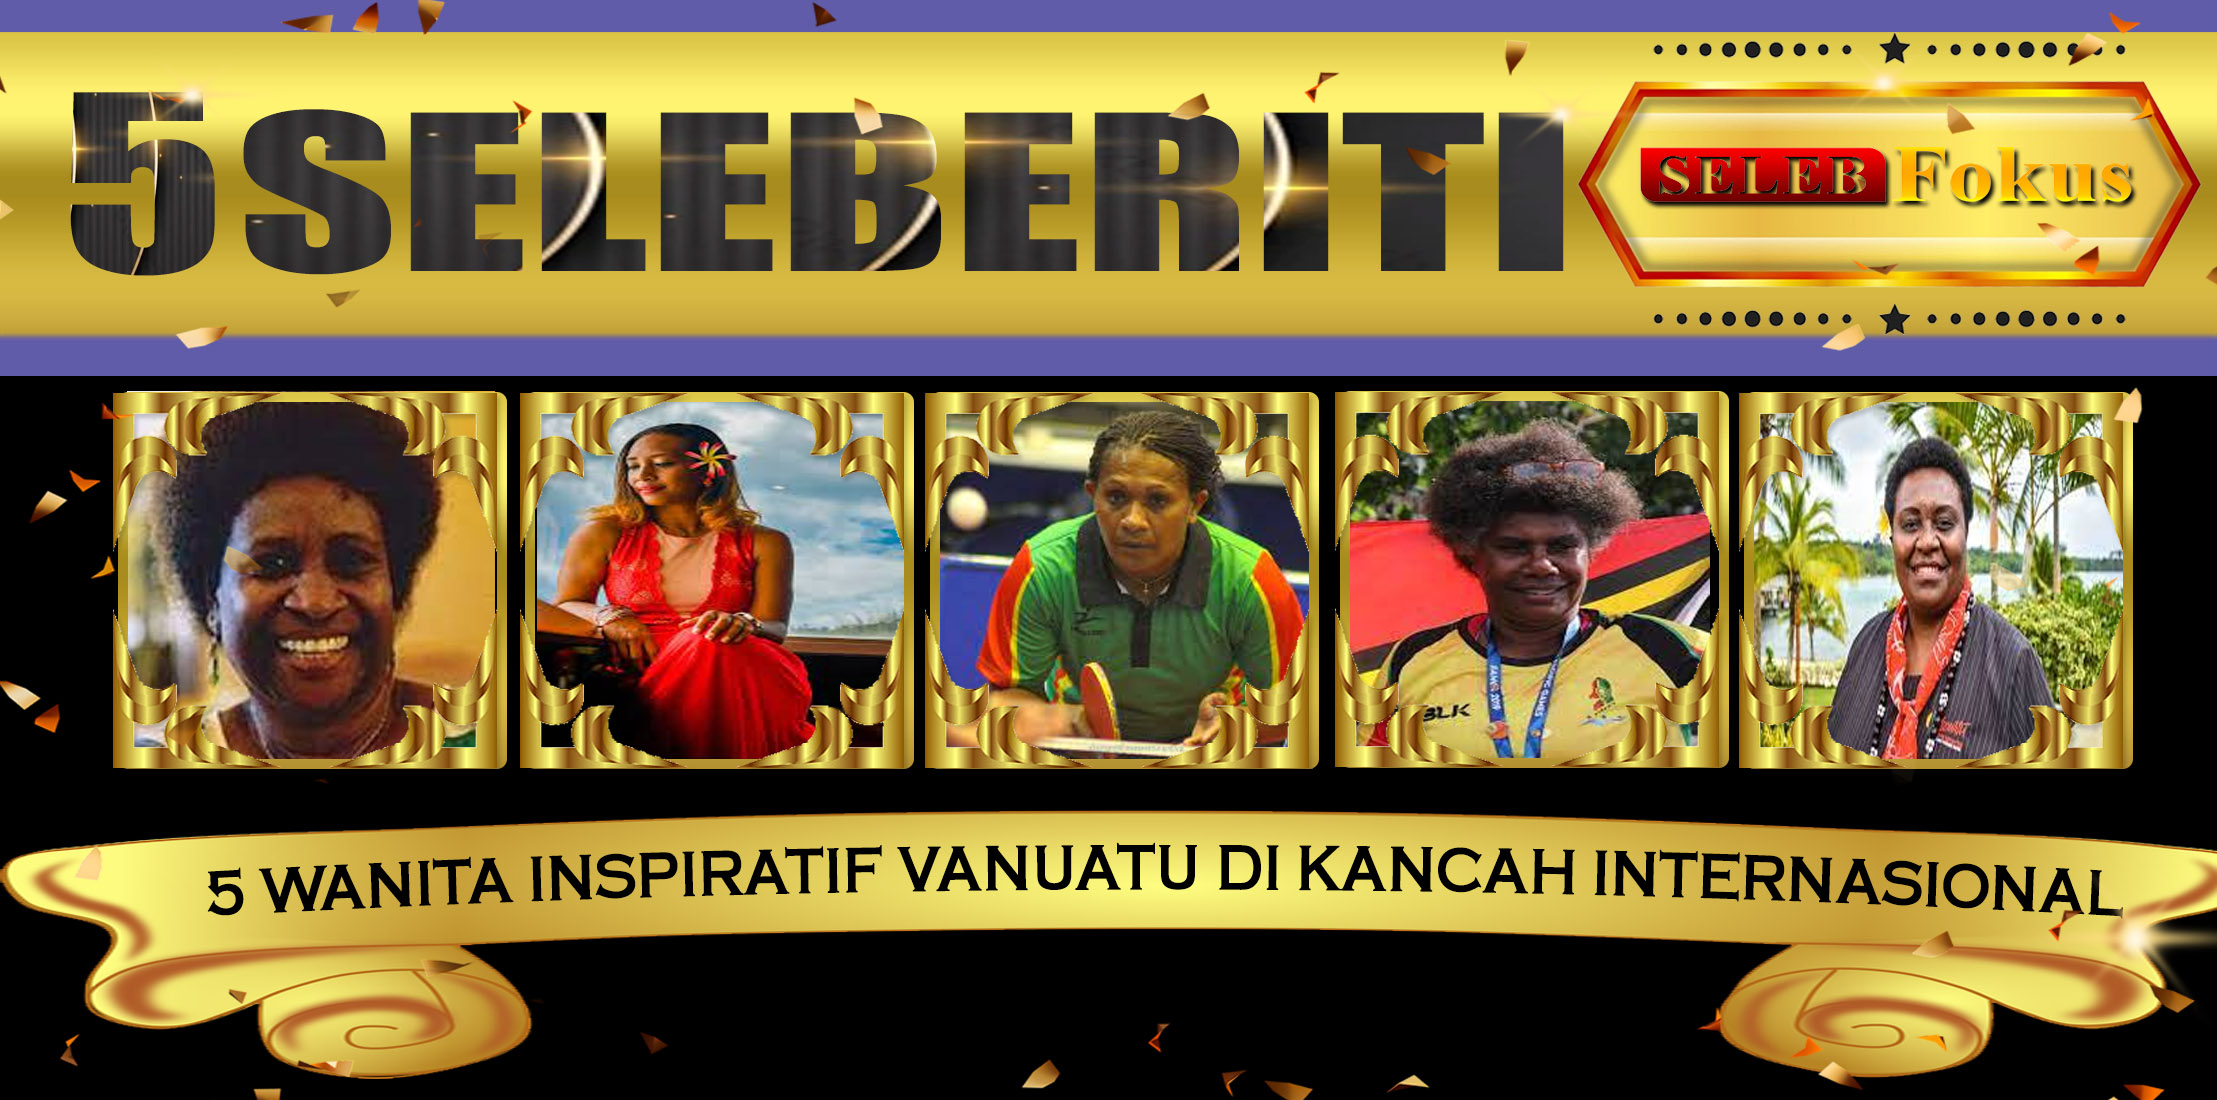 5 Wanita Inspiratif Vanuatu di Kancah Internasional